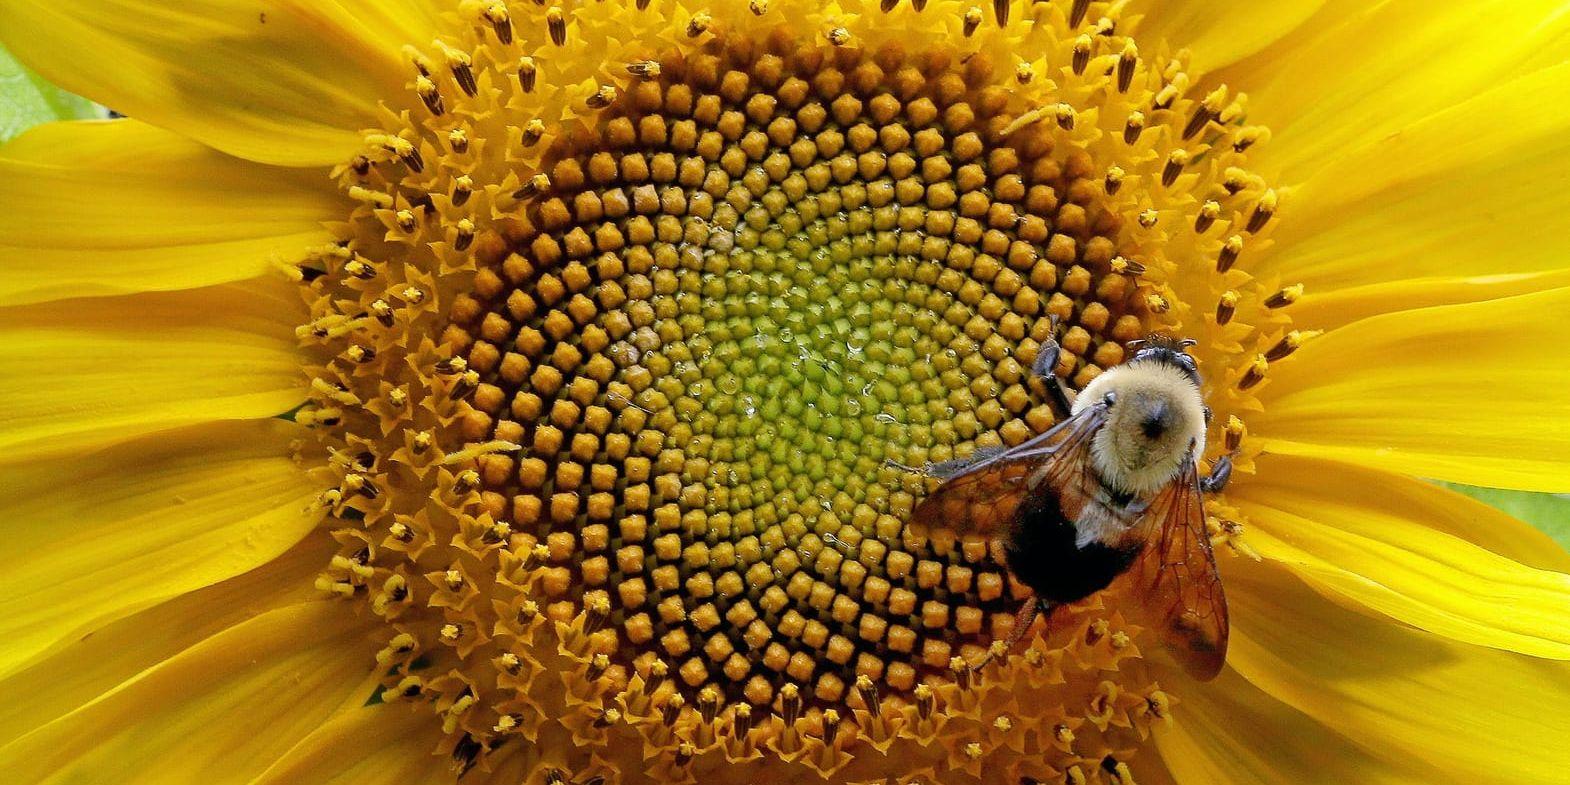 Pollinerare. 80 procent av våra växter pollineras av insekter.